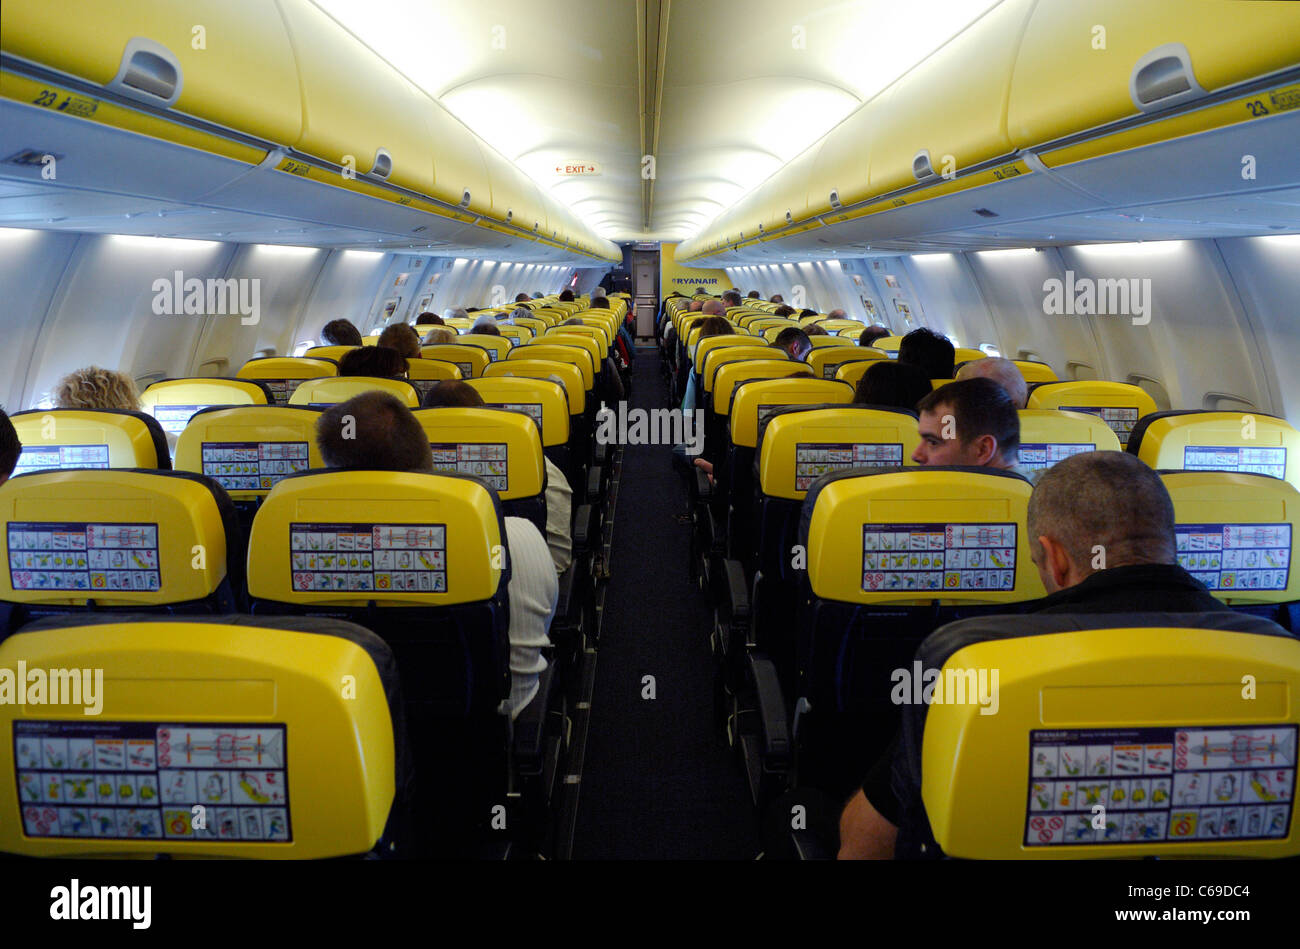 Boeing 737 interior view during flight, Ryanair Irish low cost airline Stock Photo